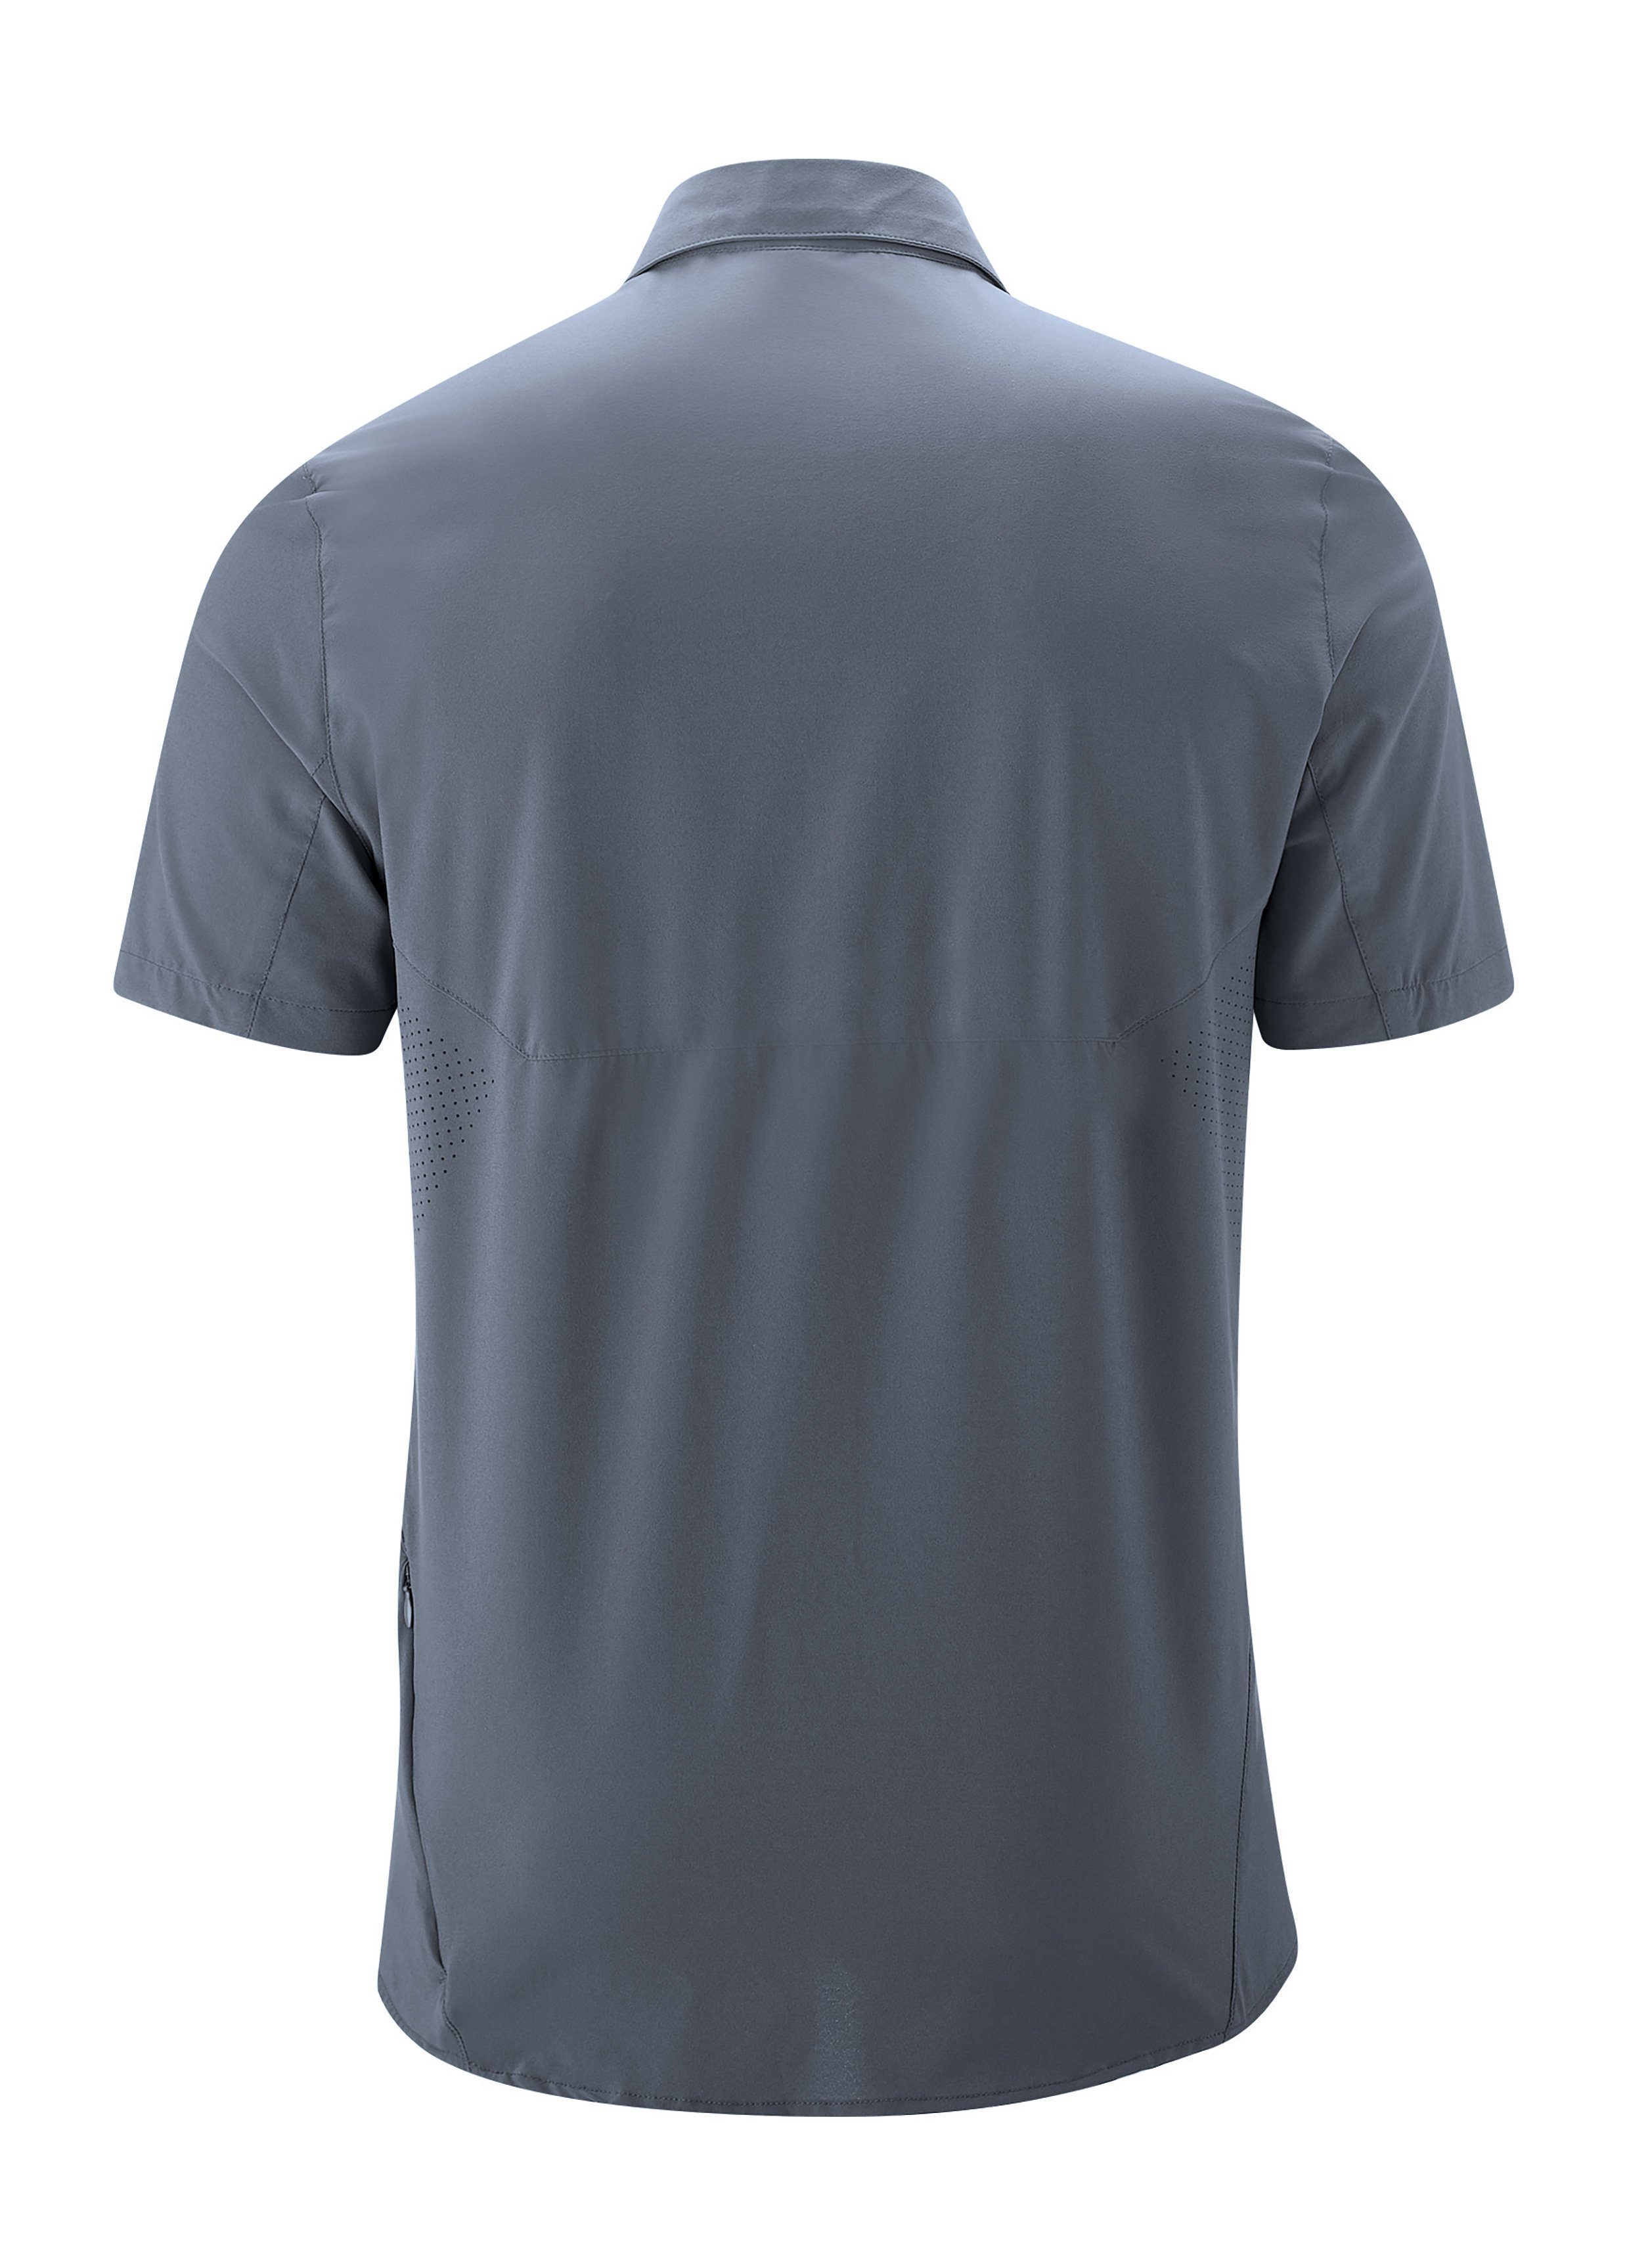 Funktionshemd mit Trekkinghemd Sonnenkragen MS/S Maier elastisches Tec Sports Sinnes Leichtes, graublau